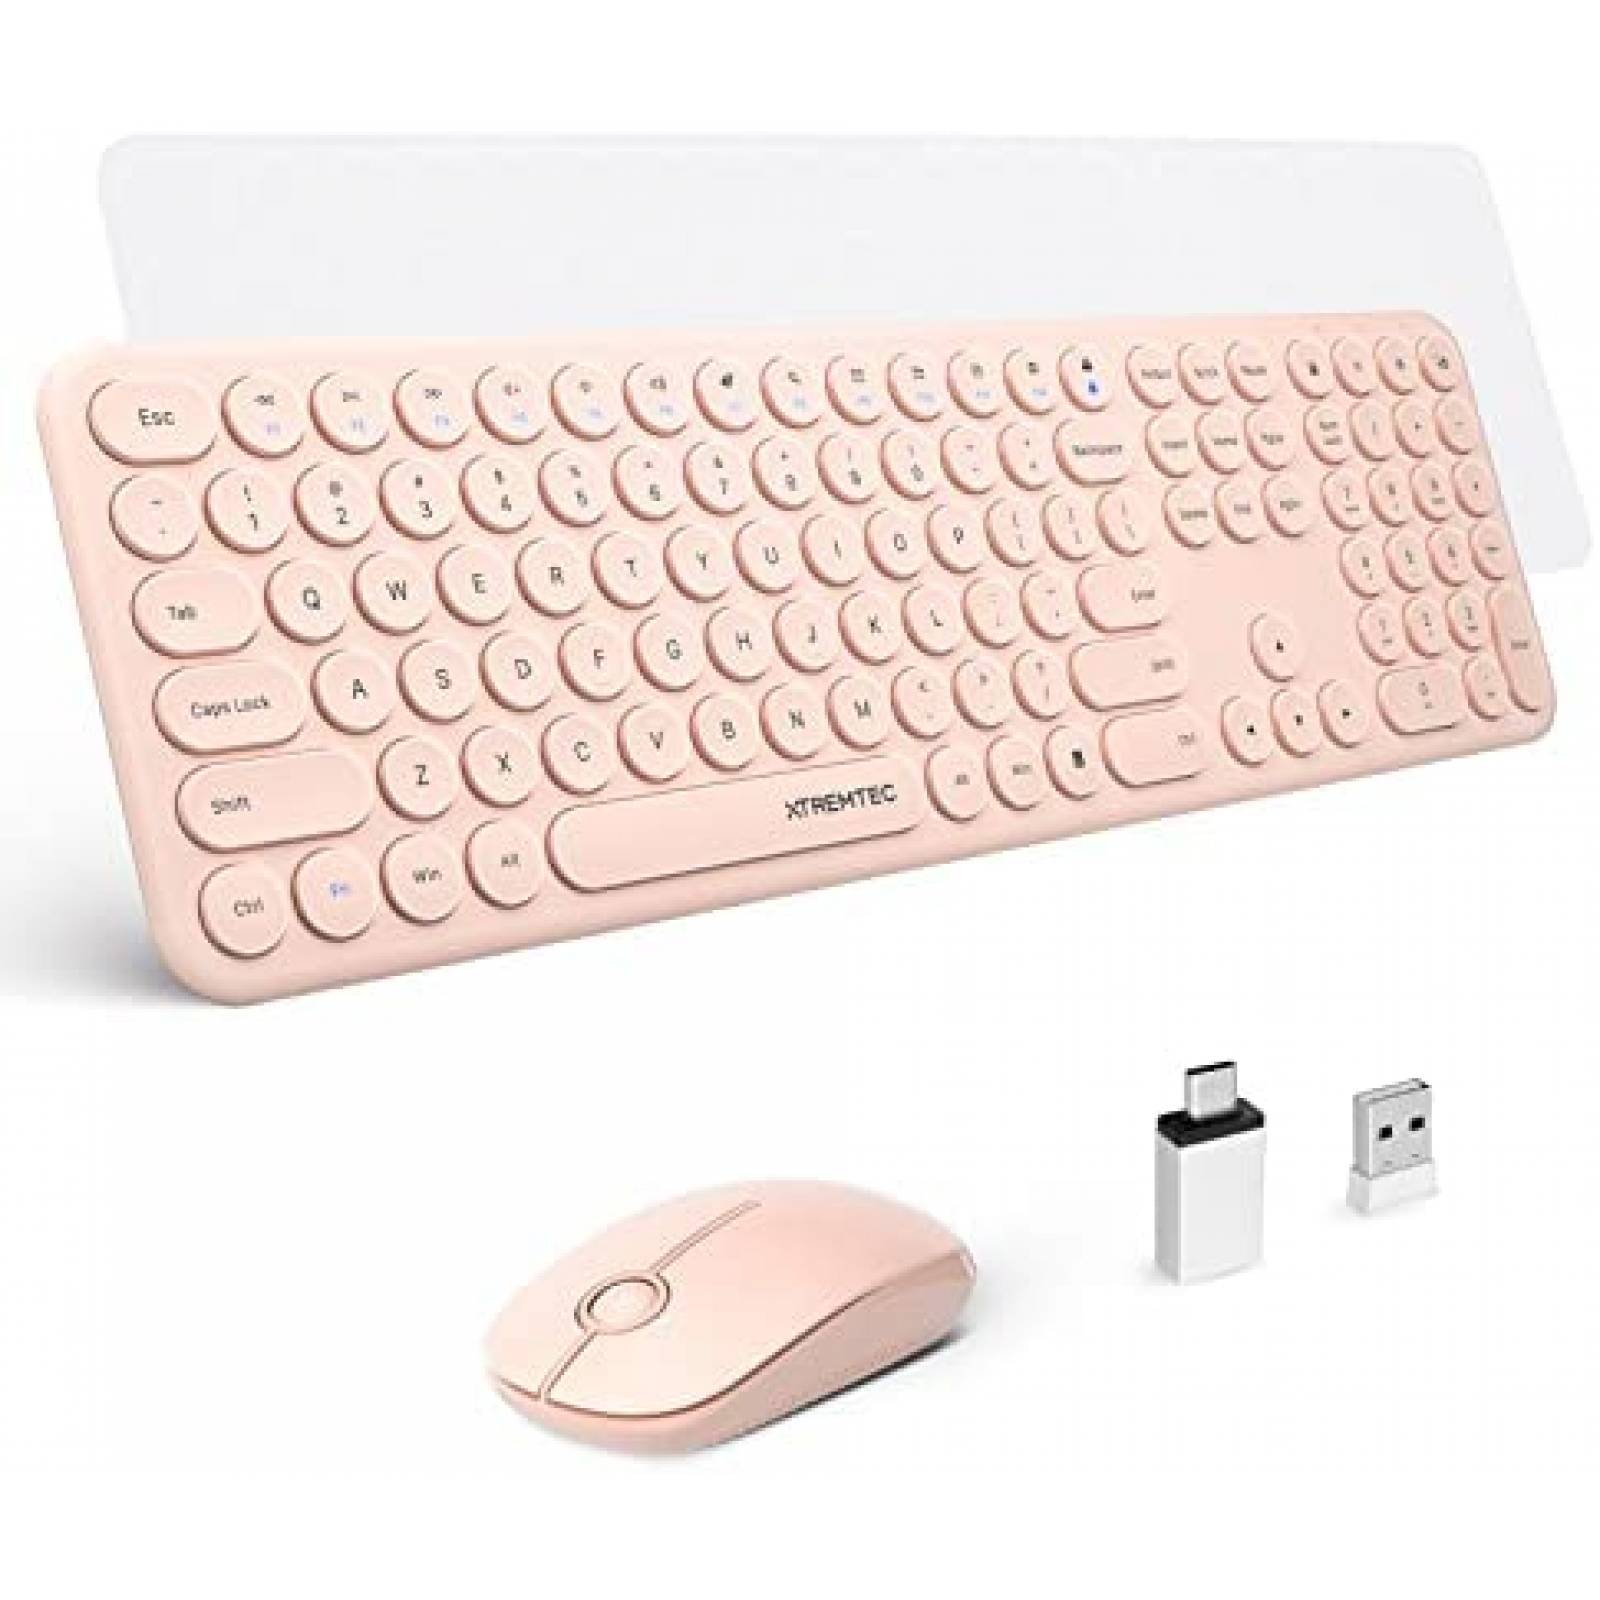  Juego de teclado y mouse inalámbricos, dulce combinación de  lindos colores, USB 2.4G, teclado ergonómico y mouse para computador  portátil y de escritorio, Mac. : Electrónica